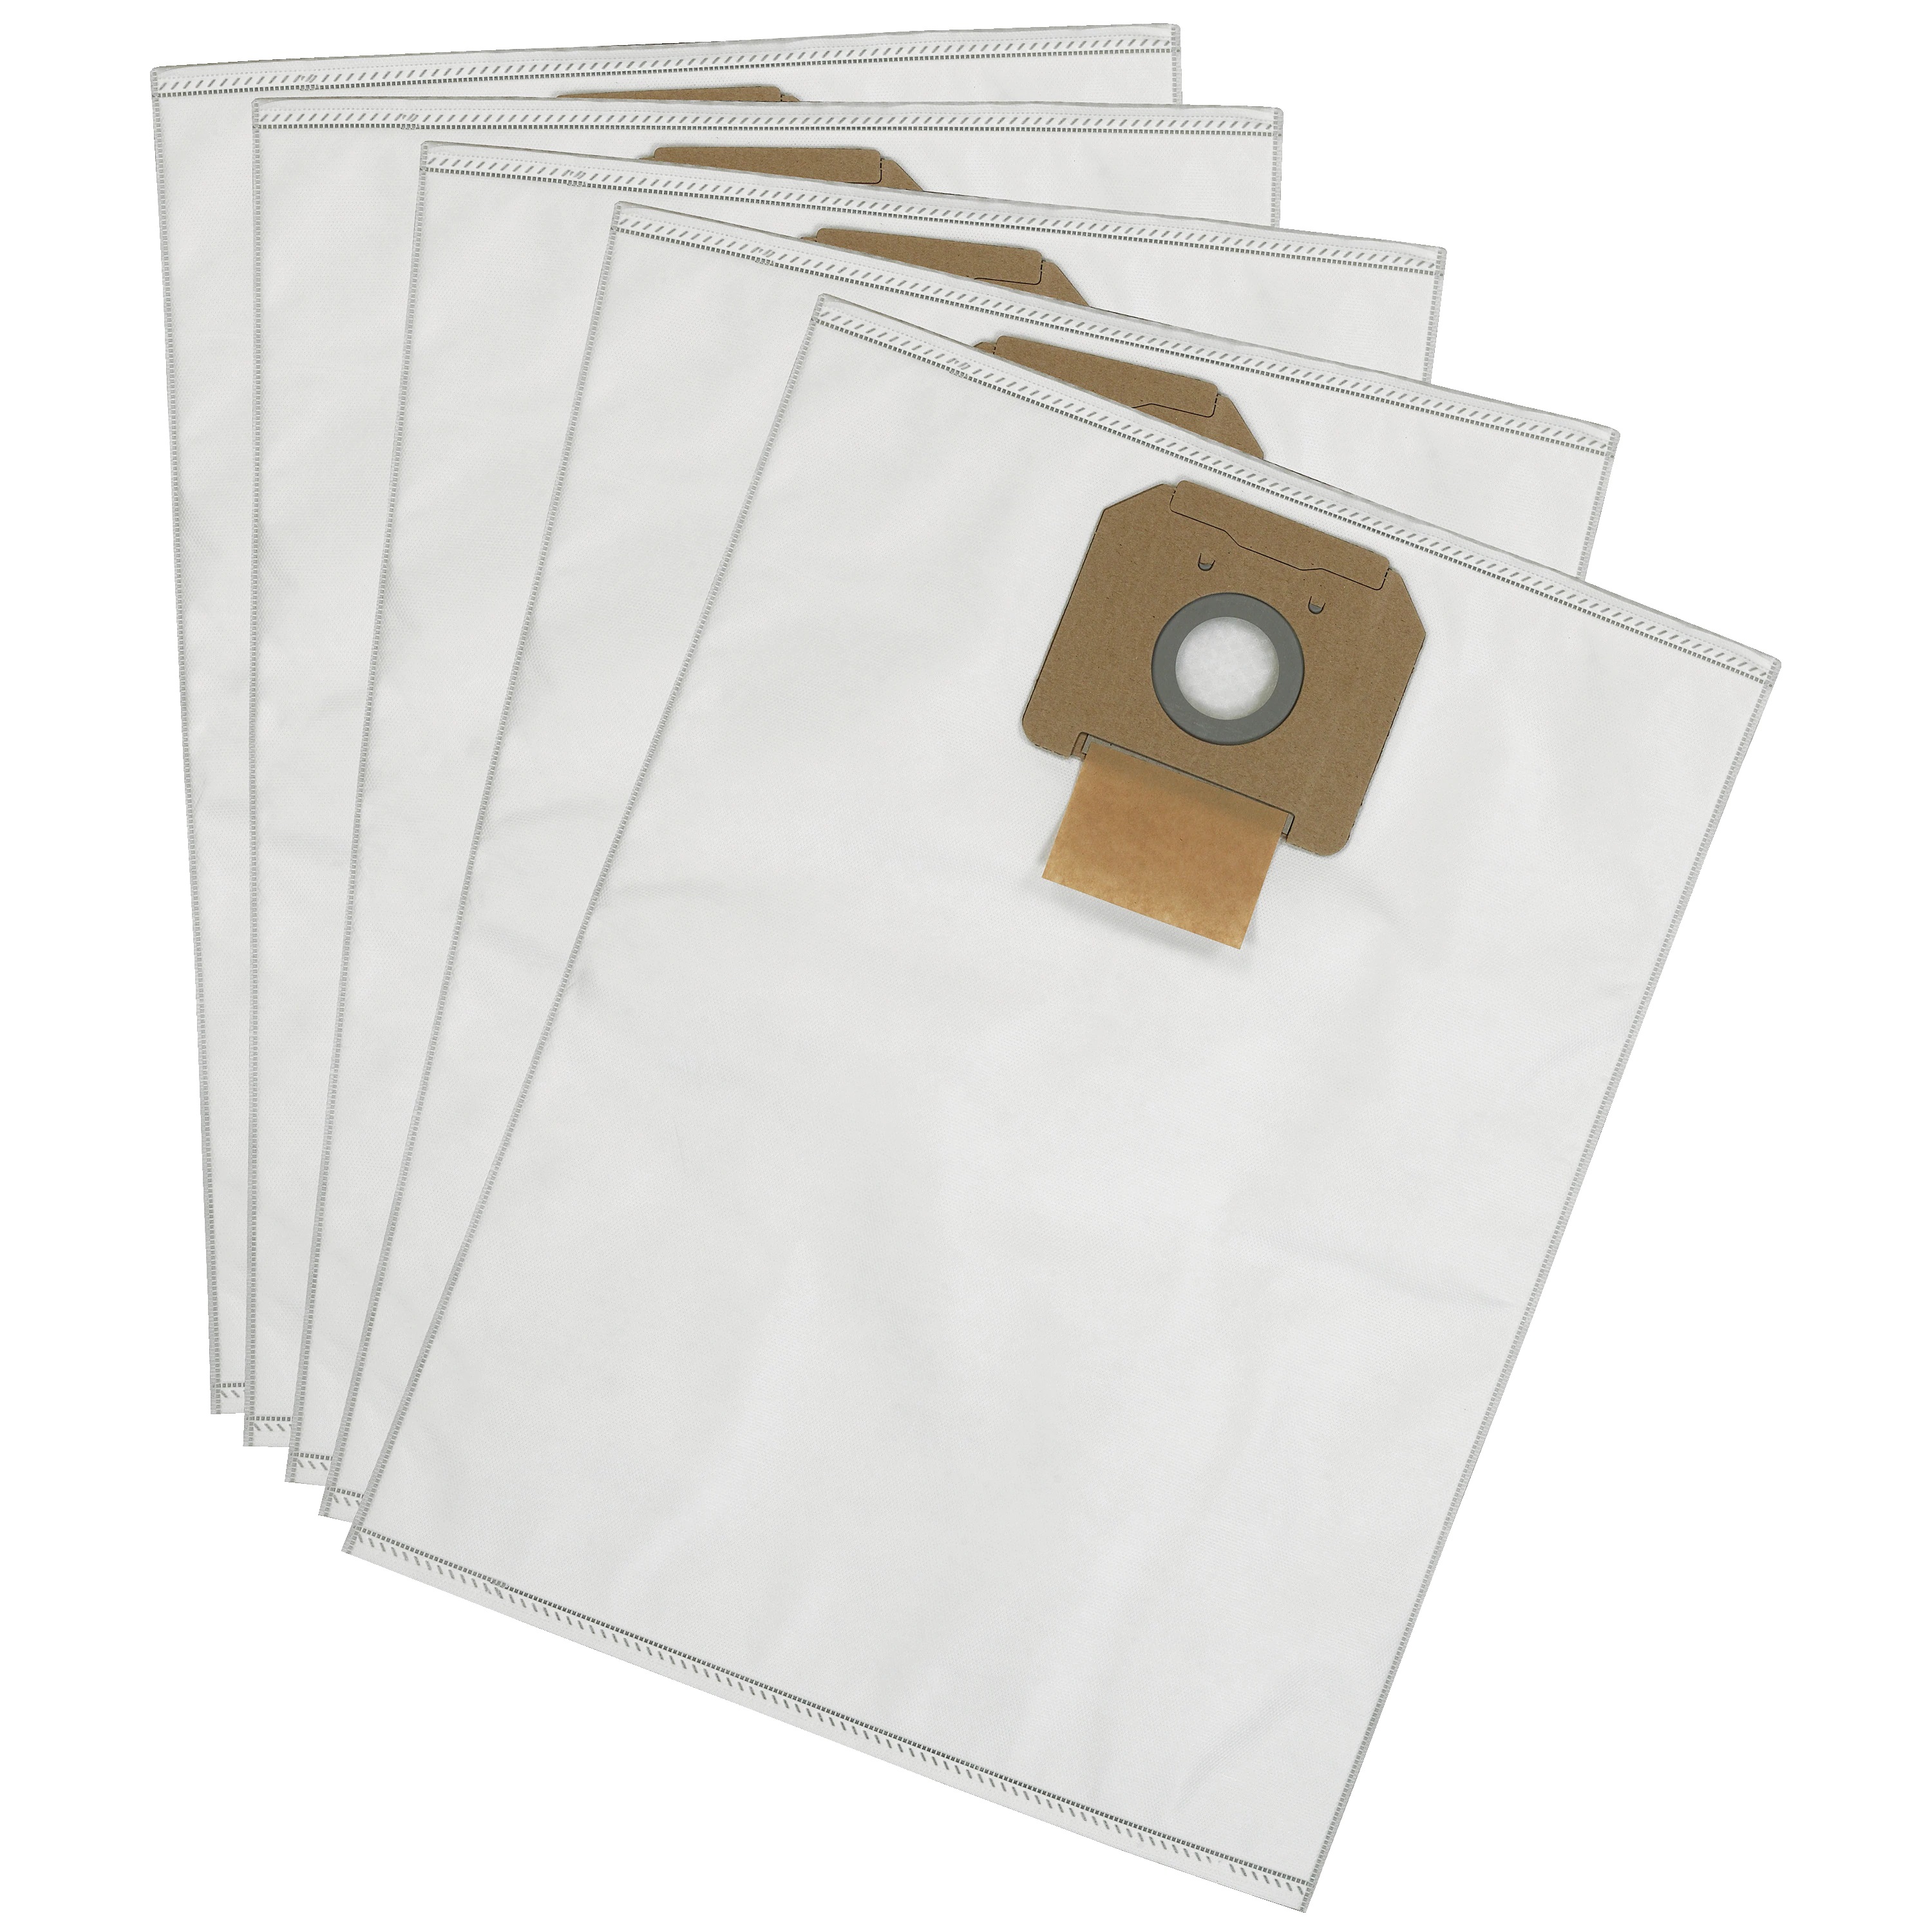 Fleece Bag (5 Pack) for DeWalt Dust Extractors - Utility and Pocket Knives